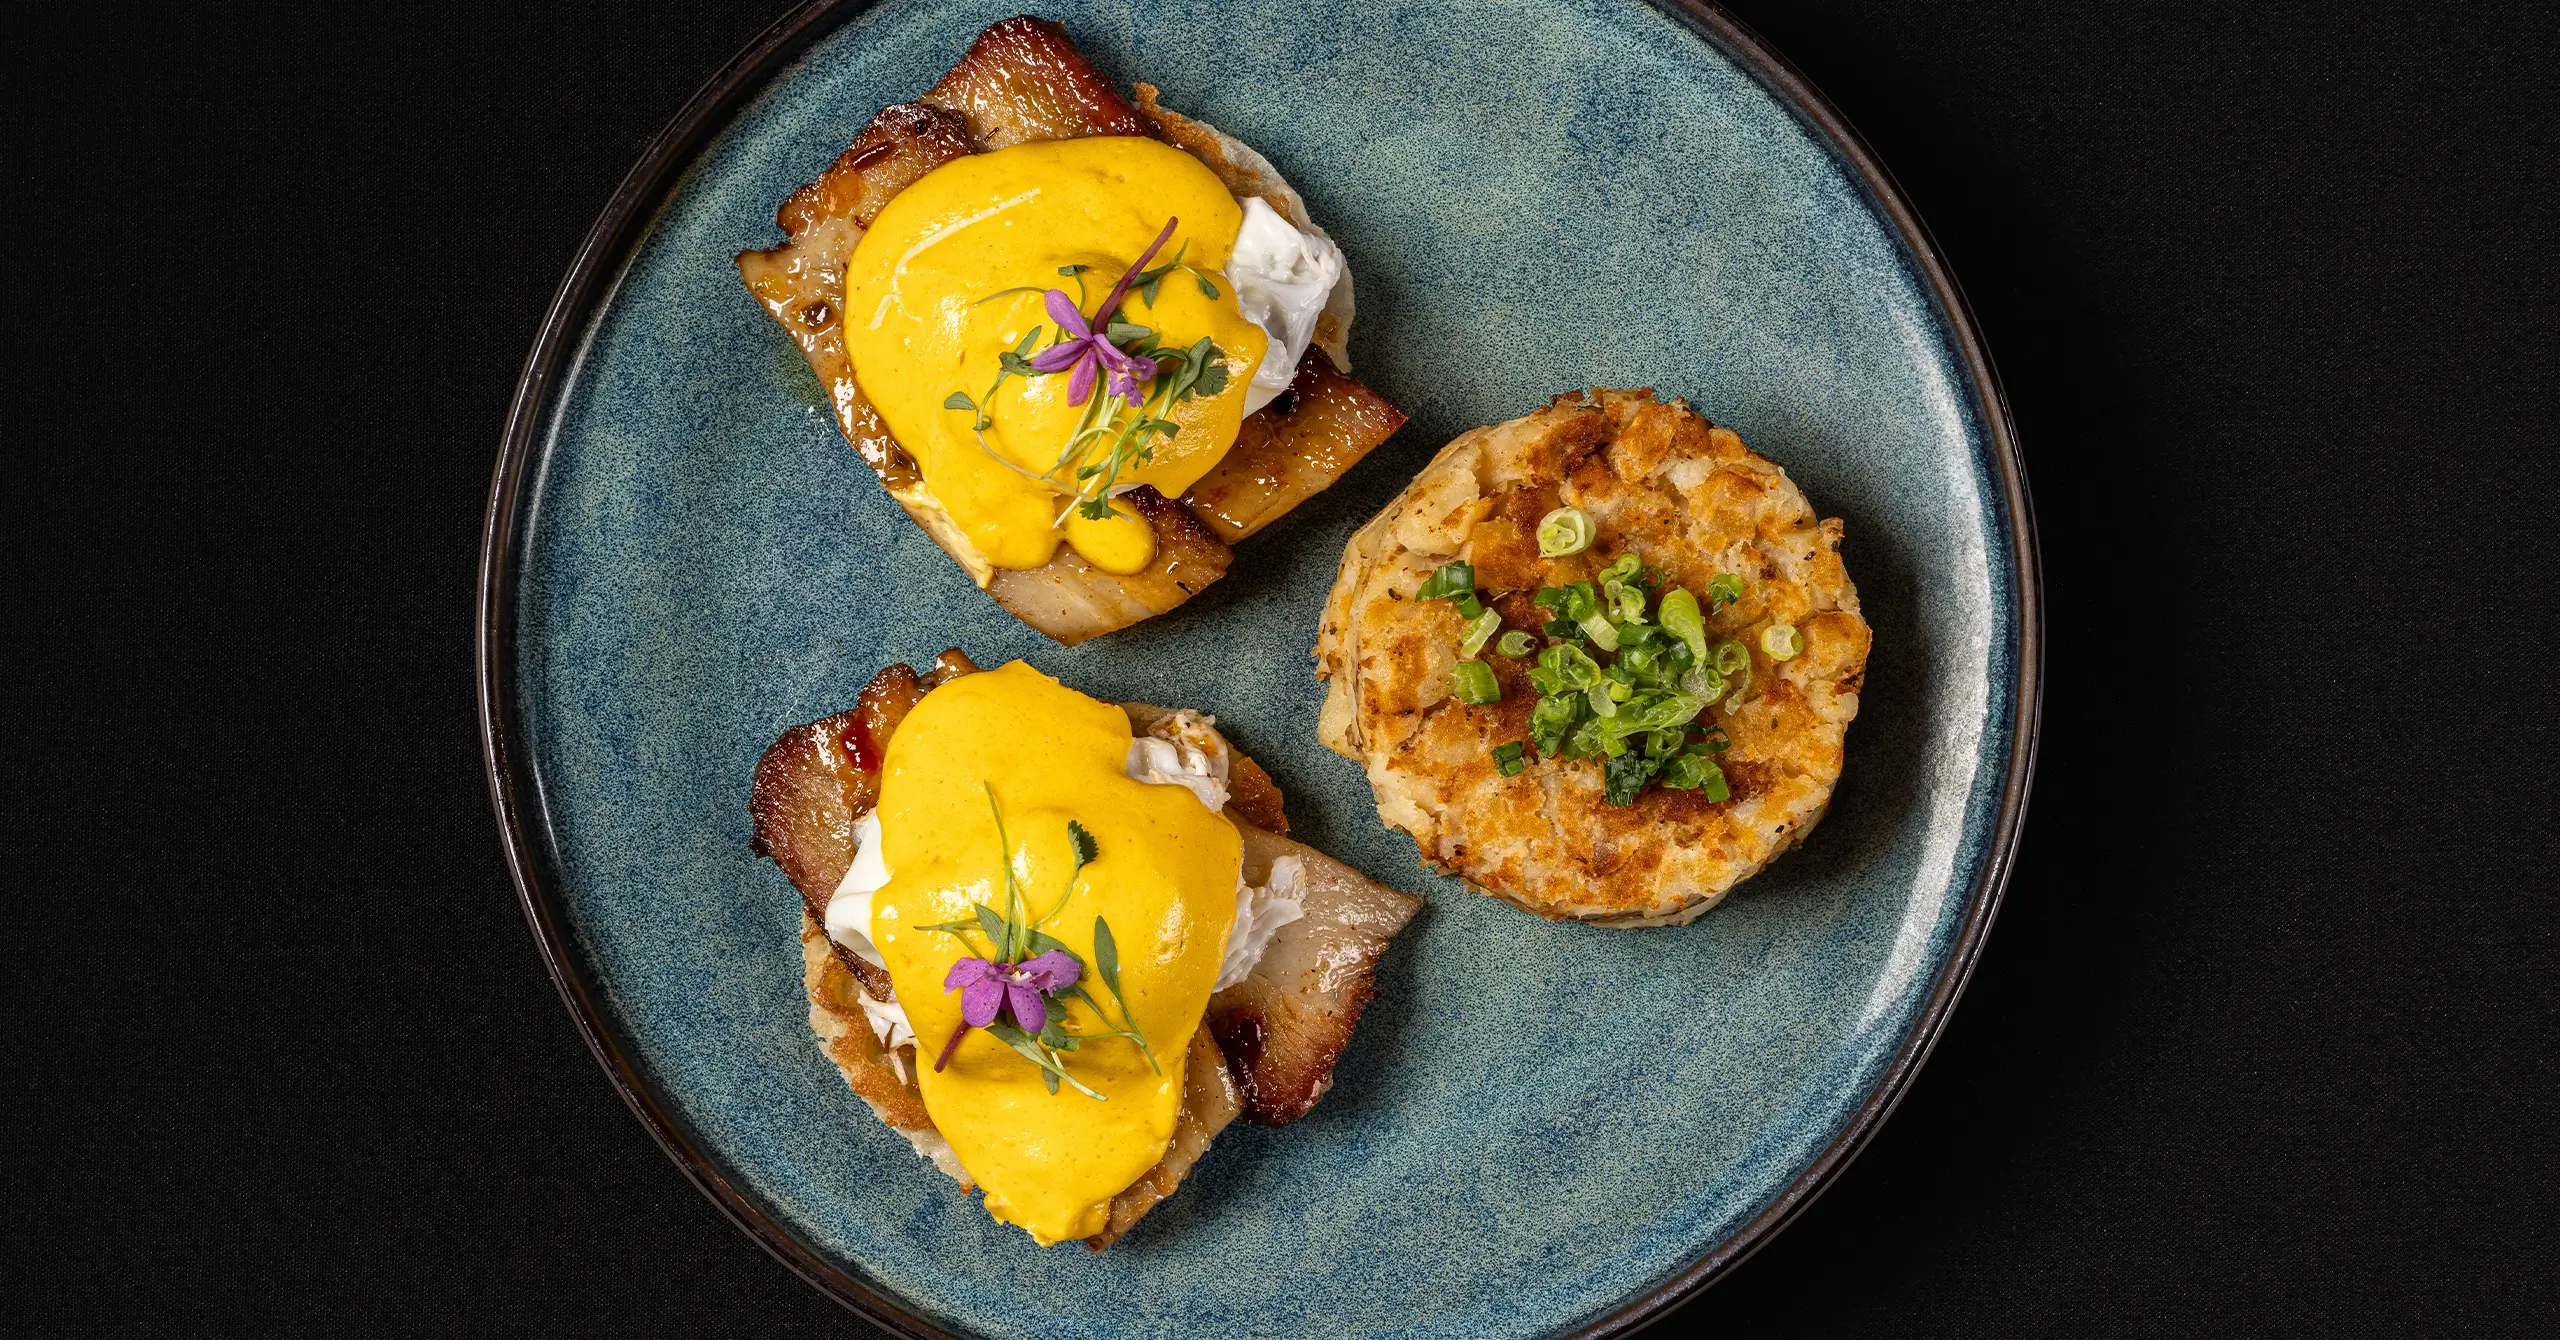 eggs benedict with breakfast potatoes